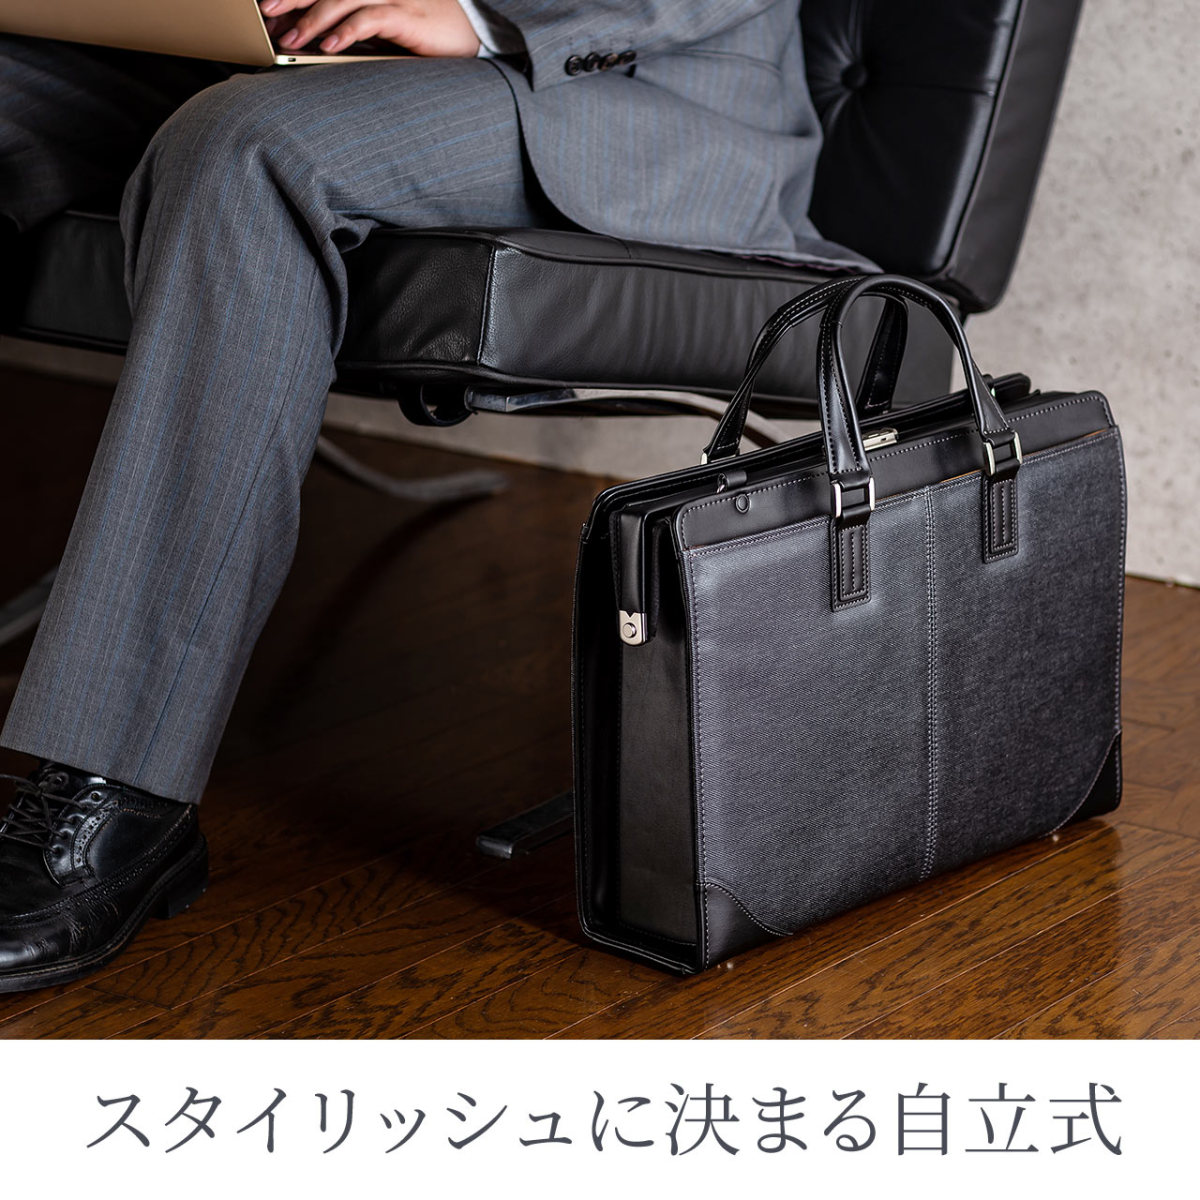 ダレスバッグ メンズ ビジネスバッグ 豊岡鞄 日本製 本革 A4 自立 簡易 